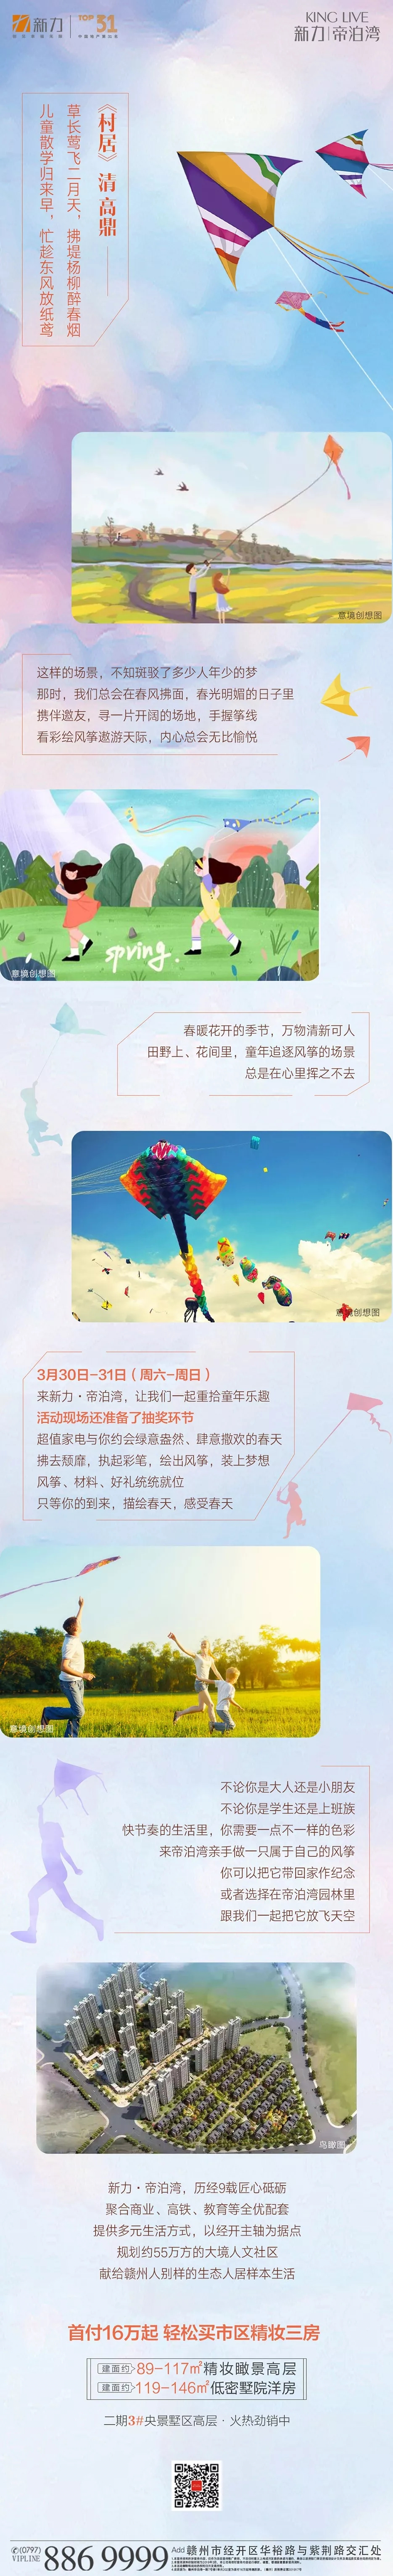 筝筝日上，放飞梦想|新力·帝泊湾创意彩绘风筝节等你参与！